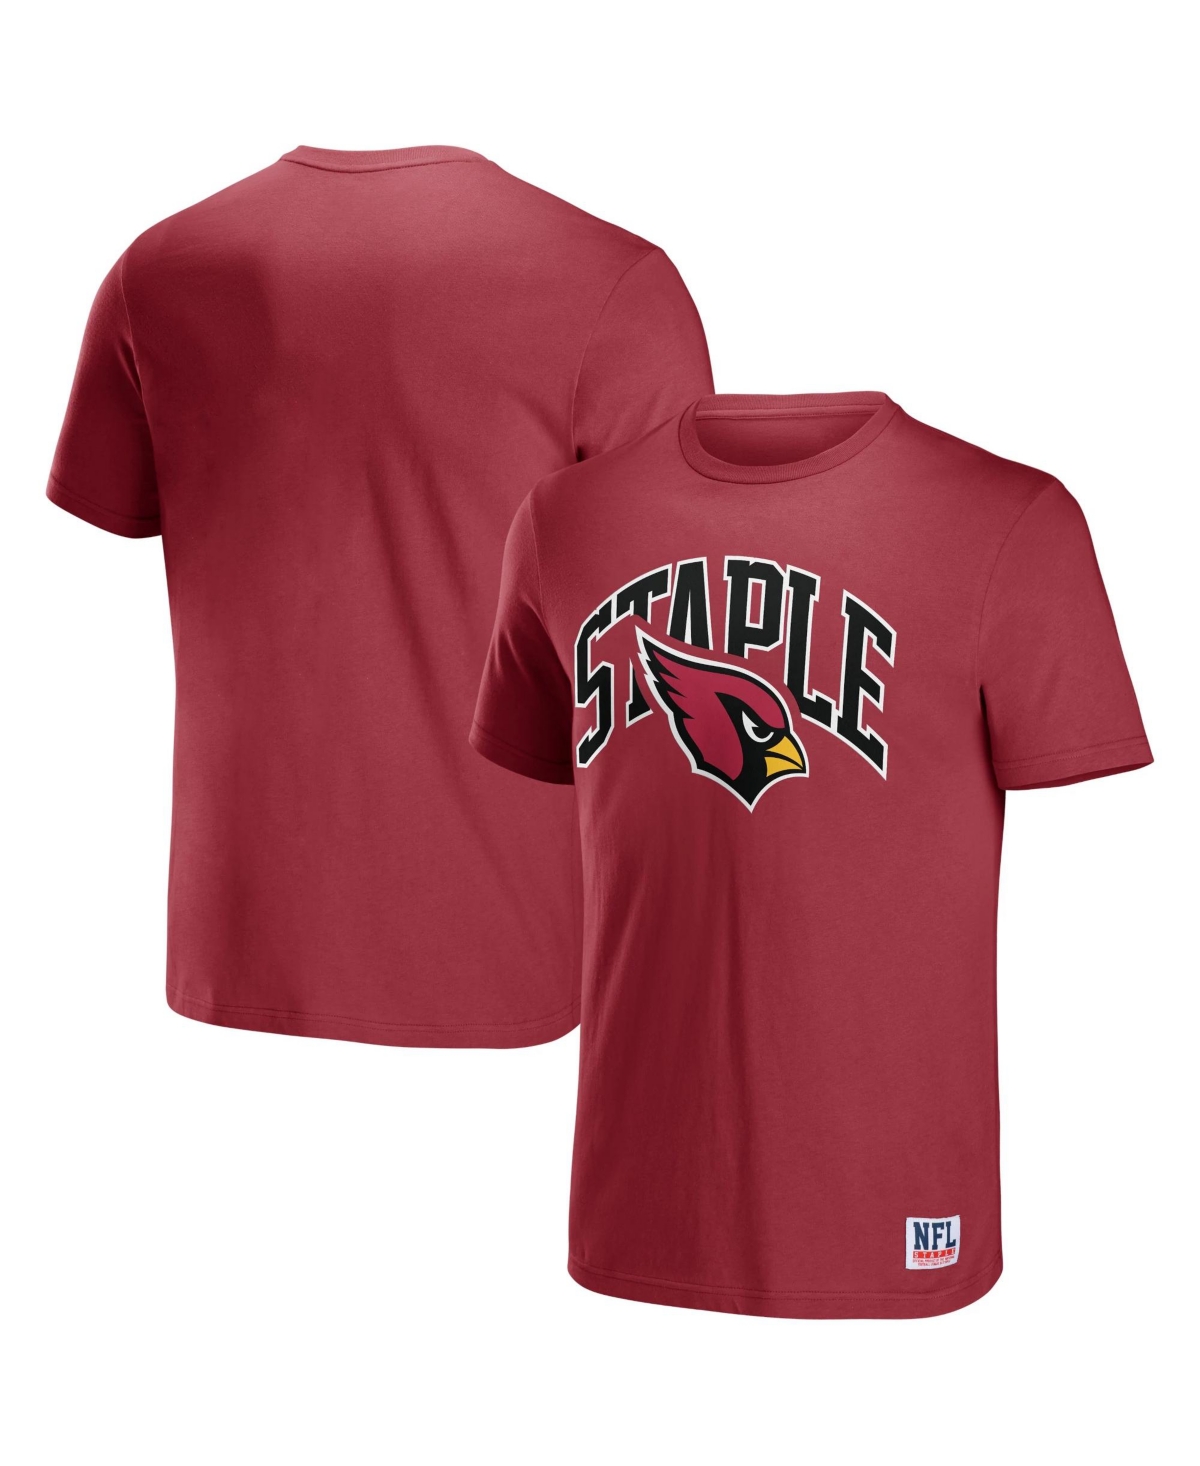 Men's Nfl X Staple Cardinal Arizona Cardinals Lockup Logo Short Sleeve T-shirt - Cardinal